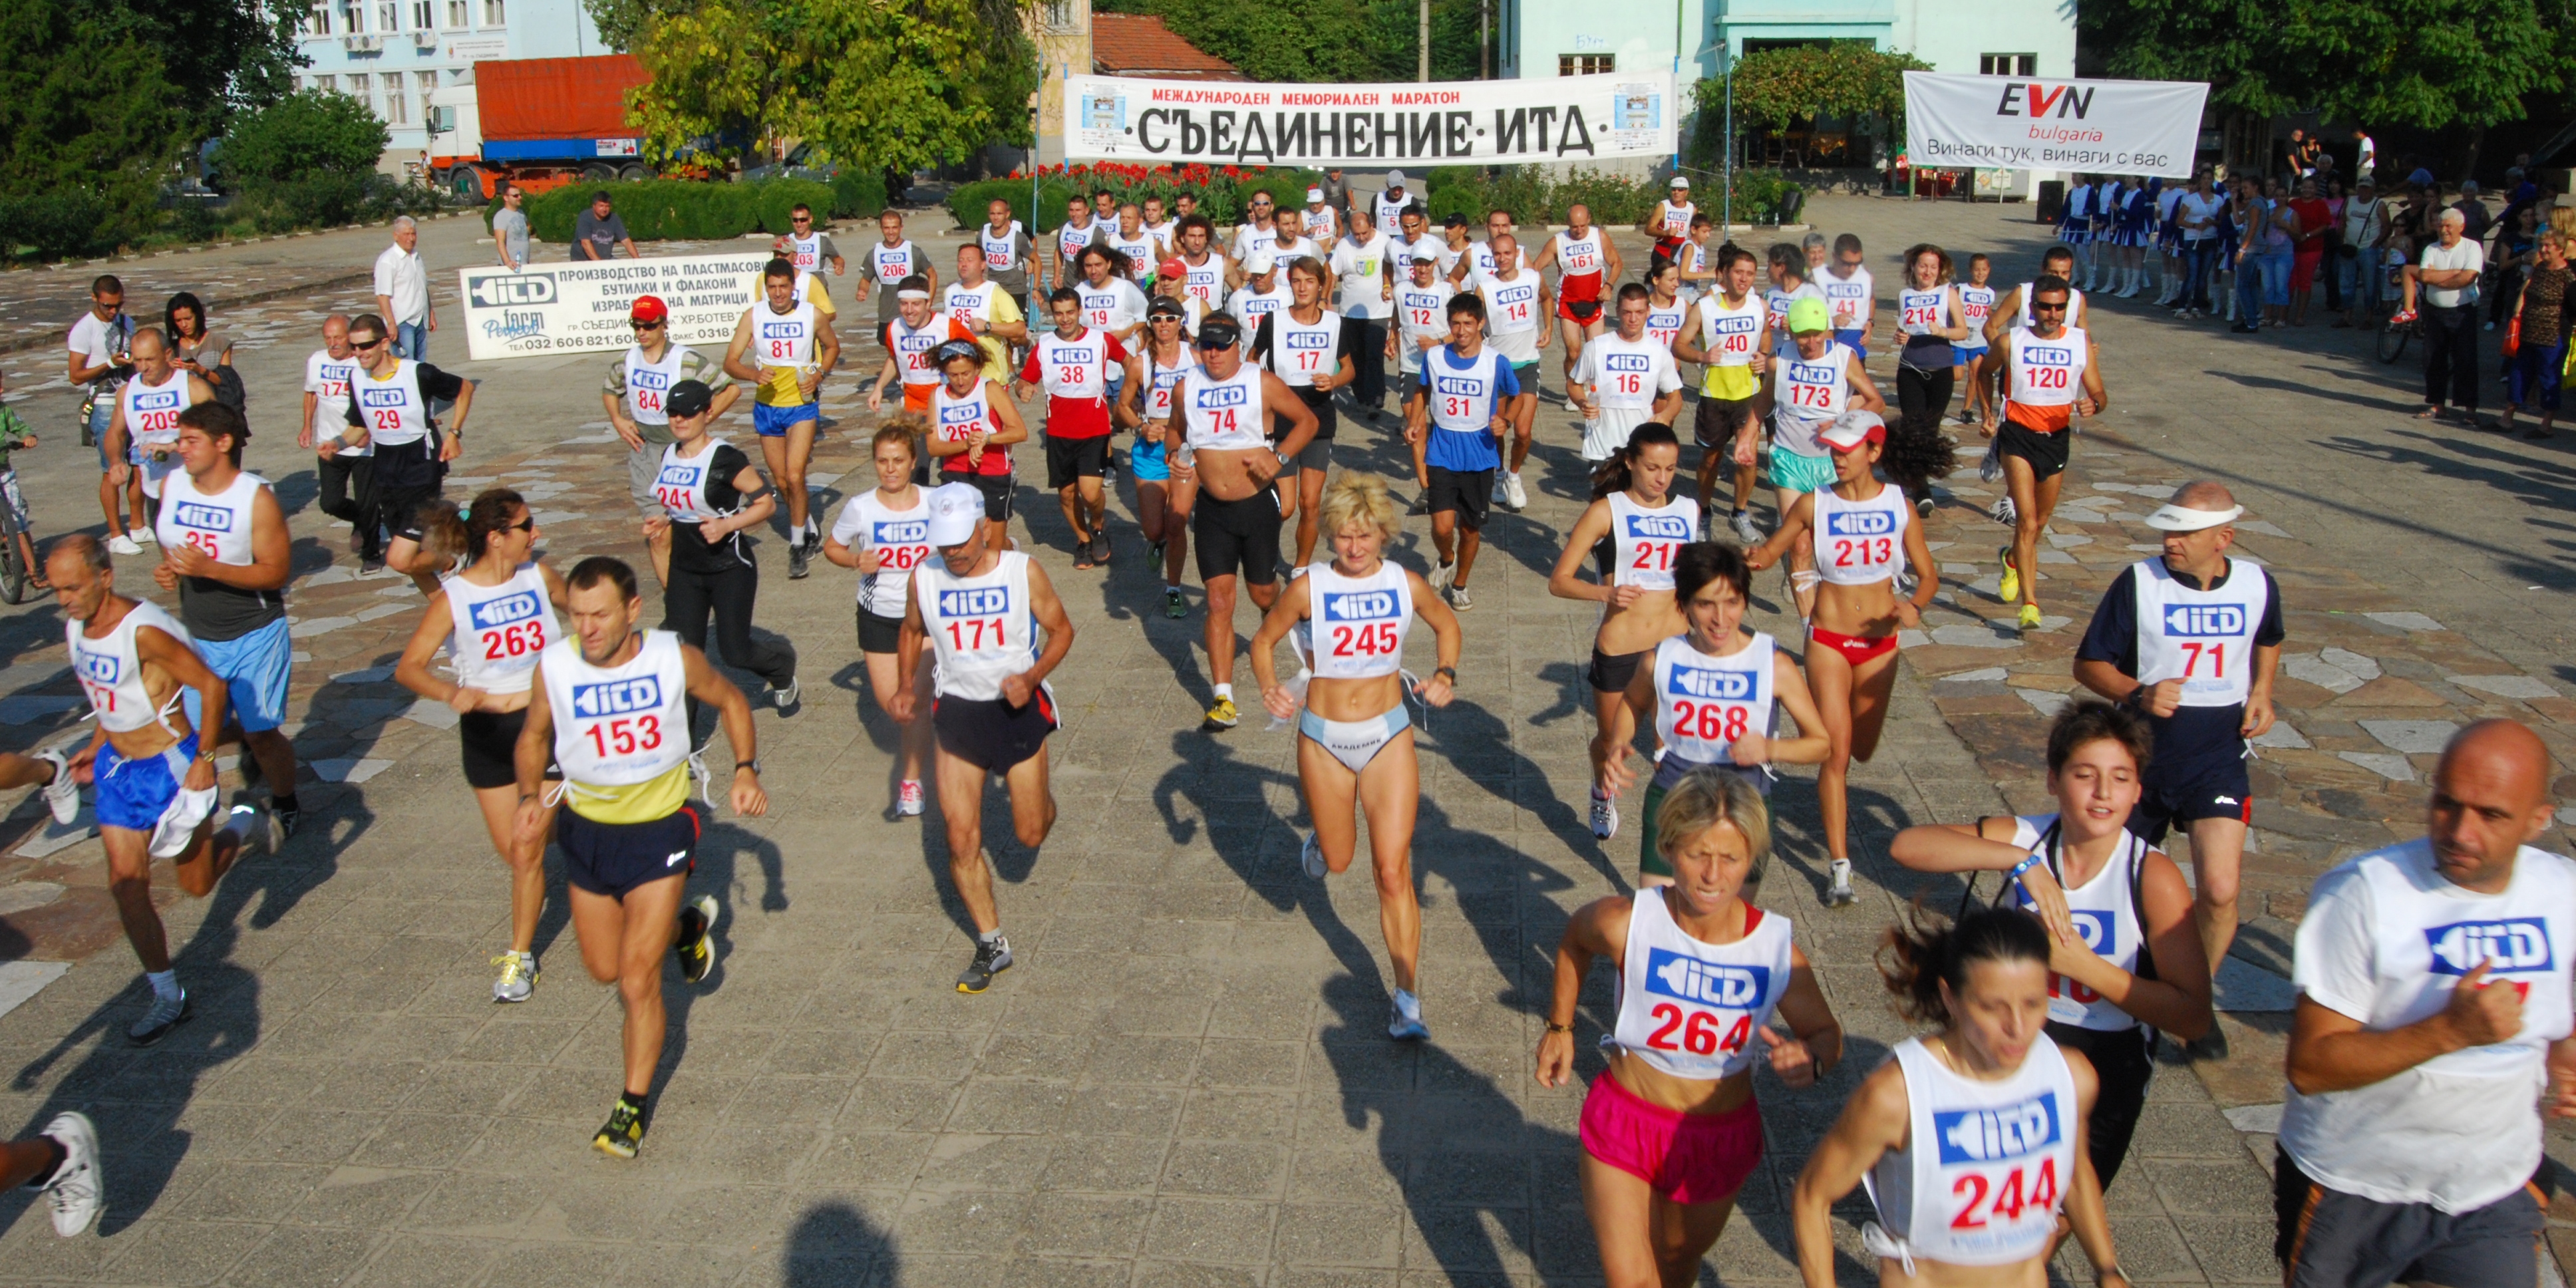 361 души участваха в 44-я Международен мемориален маратон "Съединение", чийто